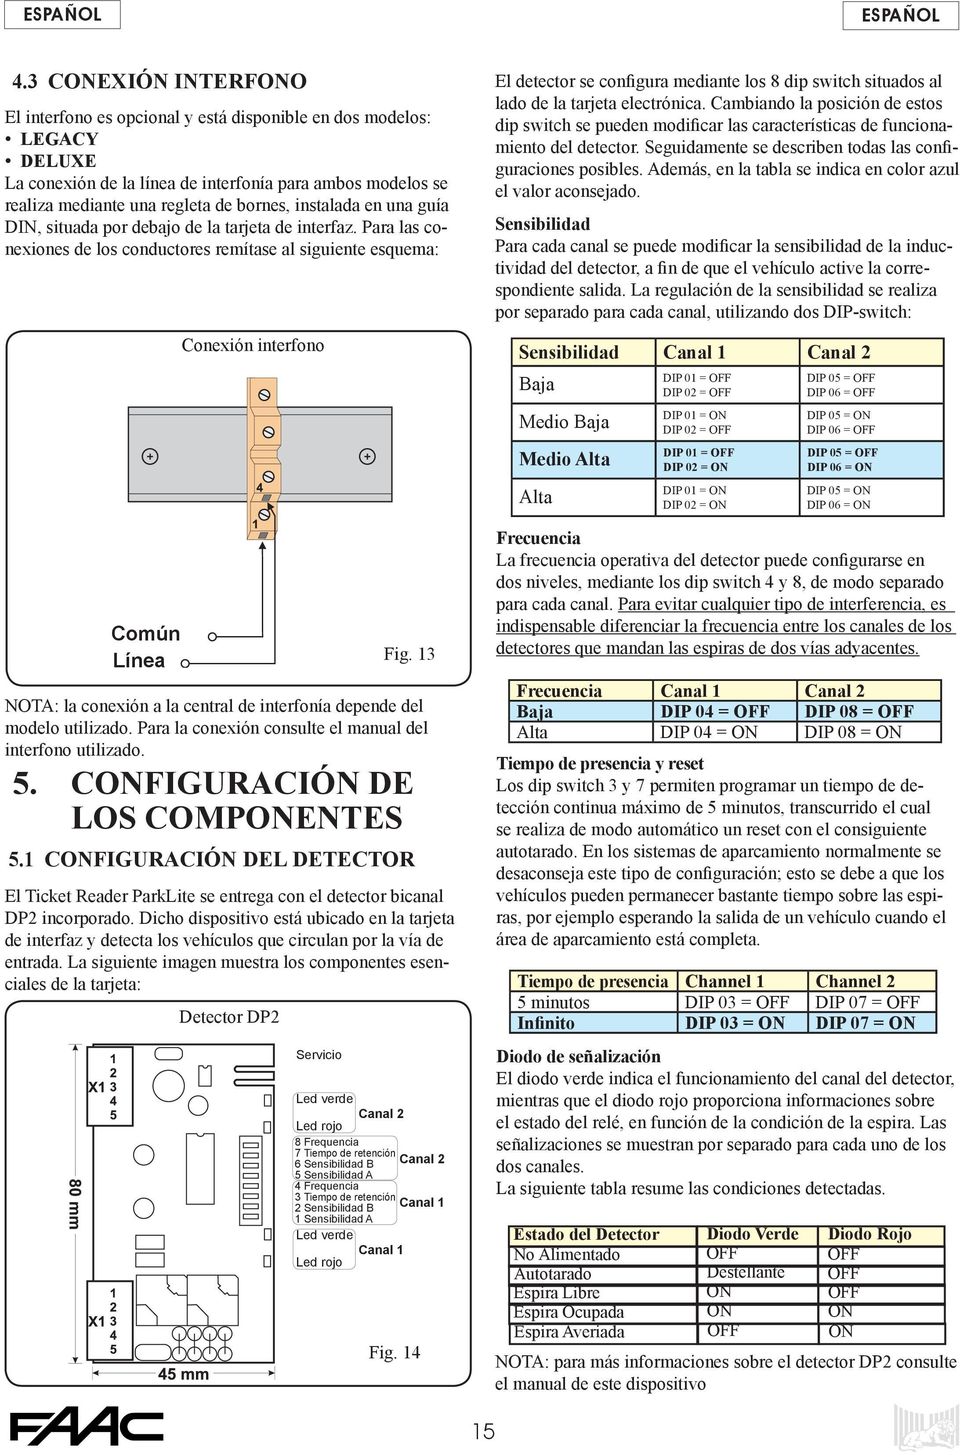 13 NOTA: la conexión a la central de interfonía depende del modelo utilizado. Para la conexión consulte el manual del interfono utilizado. 5. CONFIGURACIÓN DE LOS COMPONENTES 5.